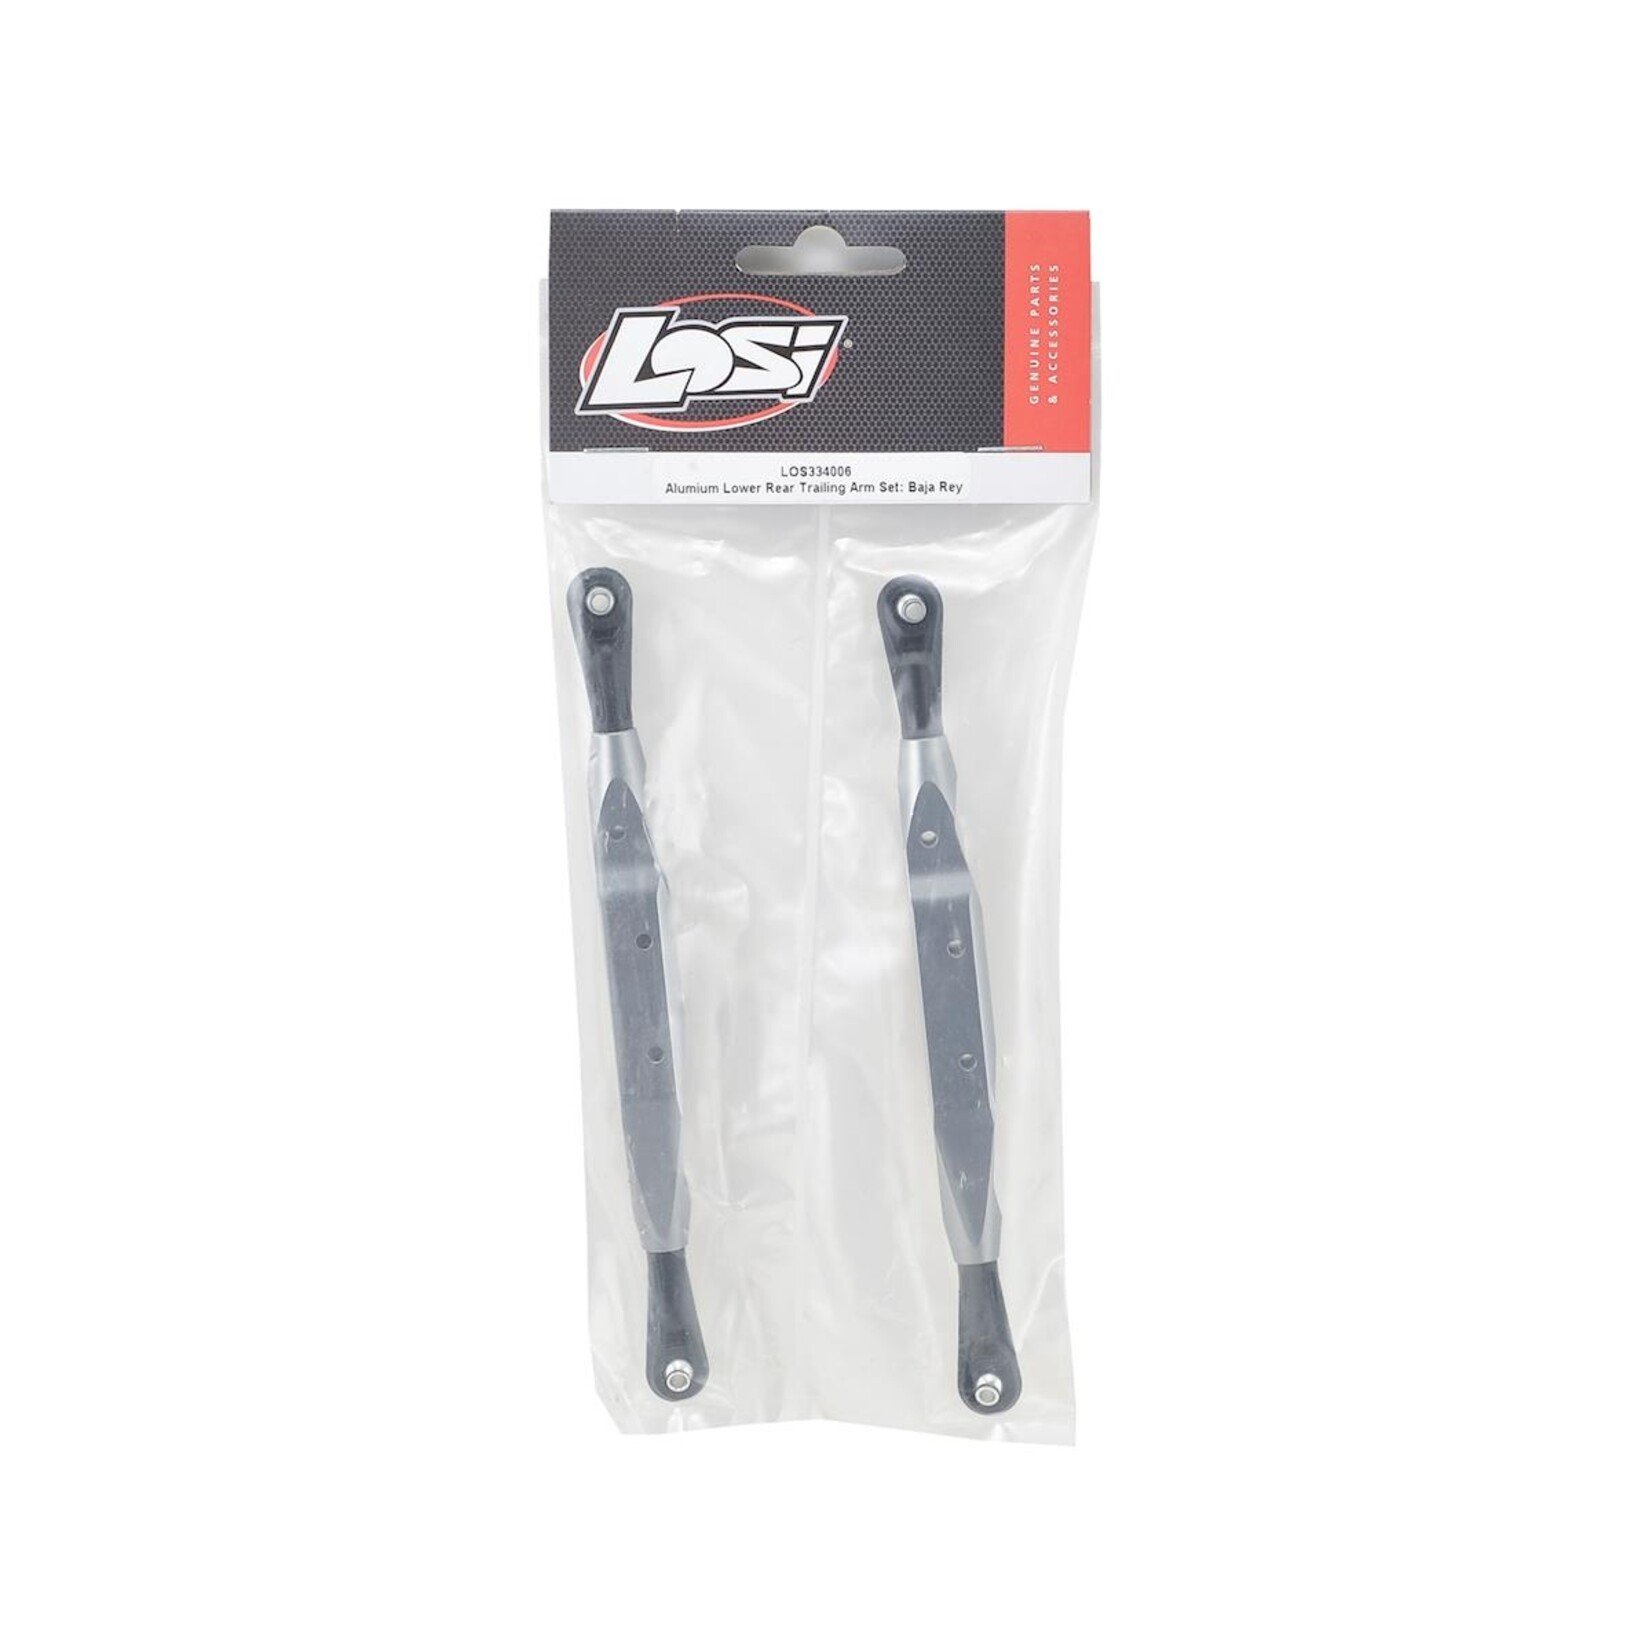 Losi Losi Baja Rey Aluminum Lower Rear Trailing Arm (2) #LOS334006